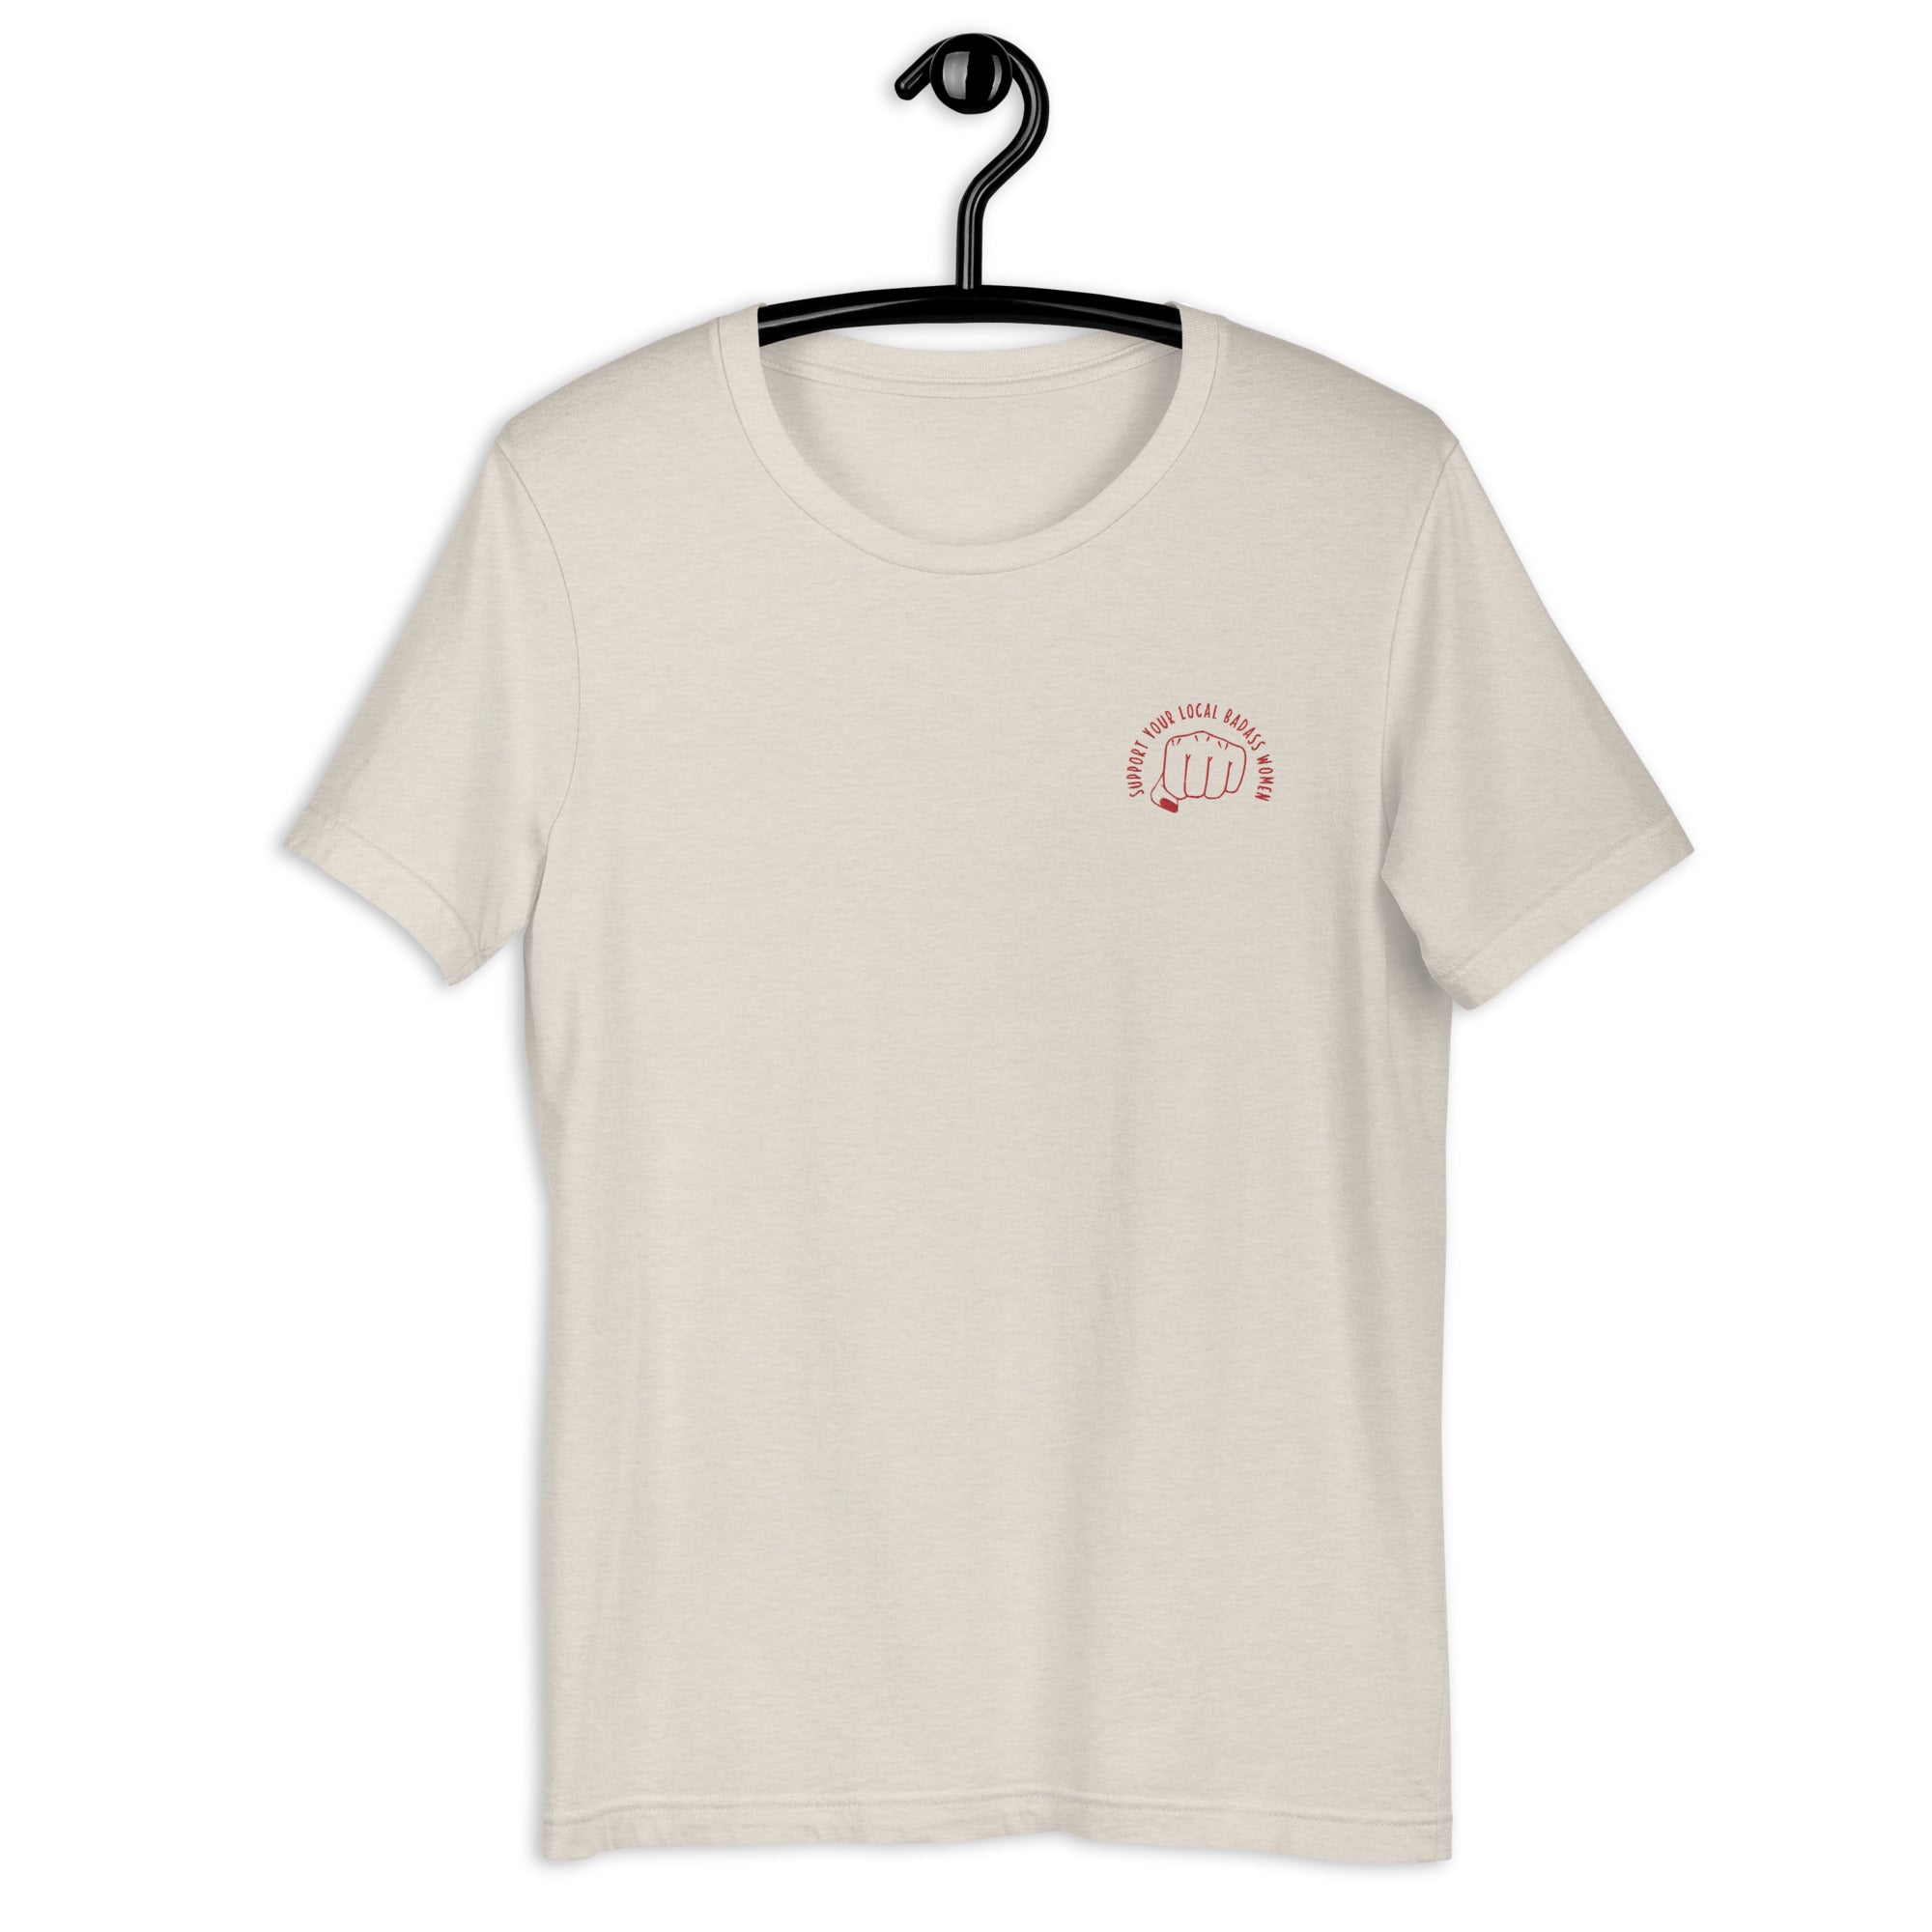 Support Women t-shirt